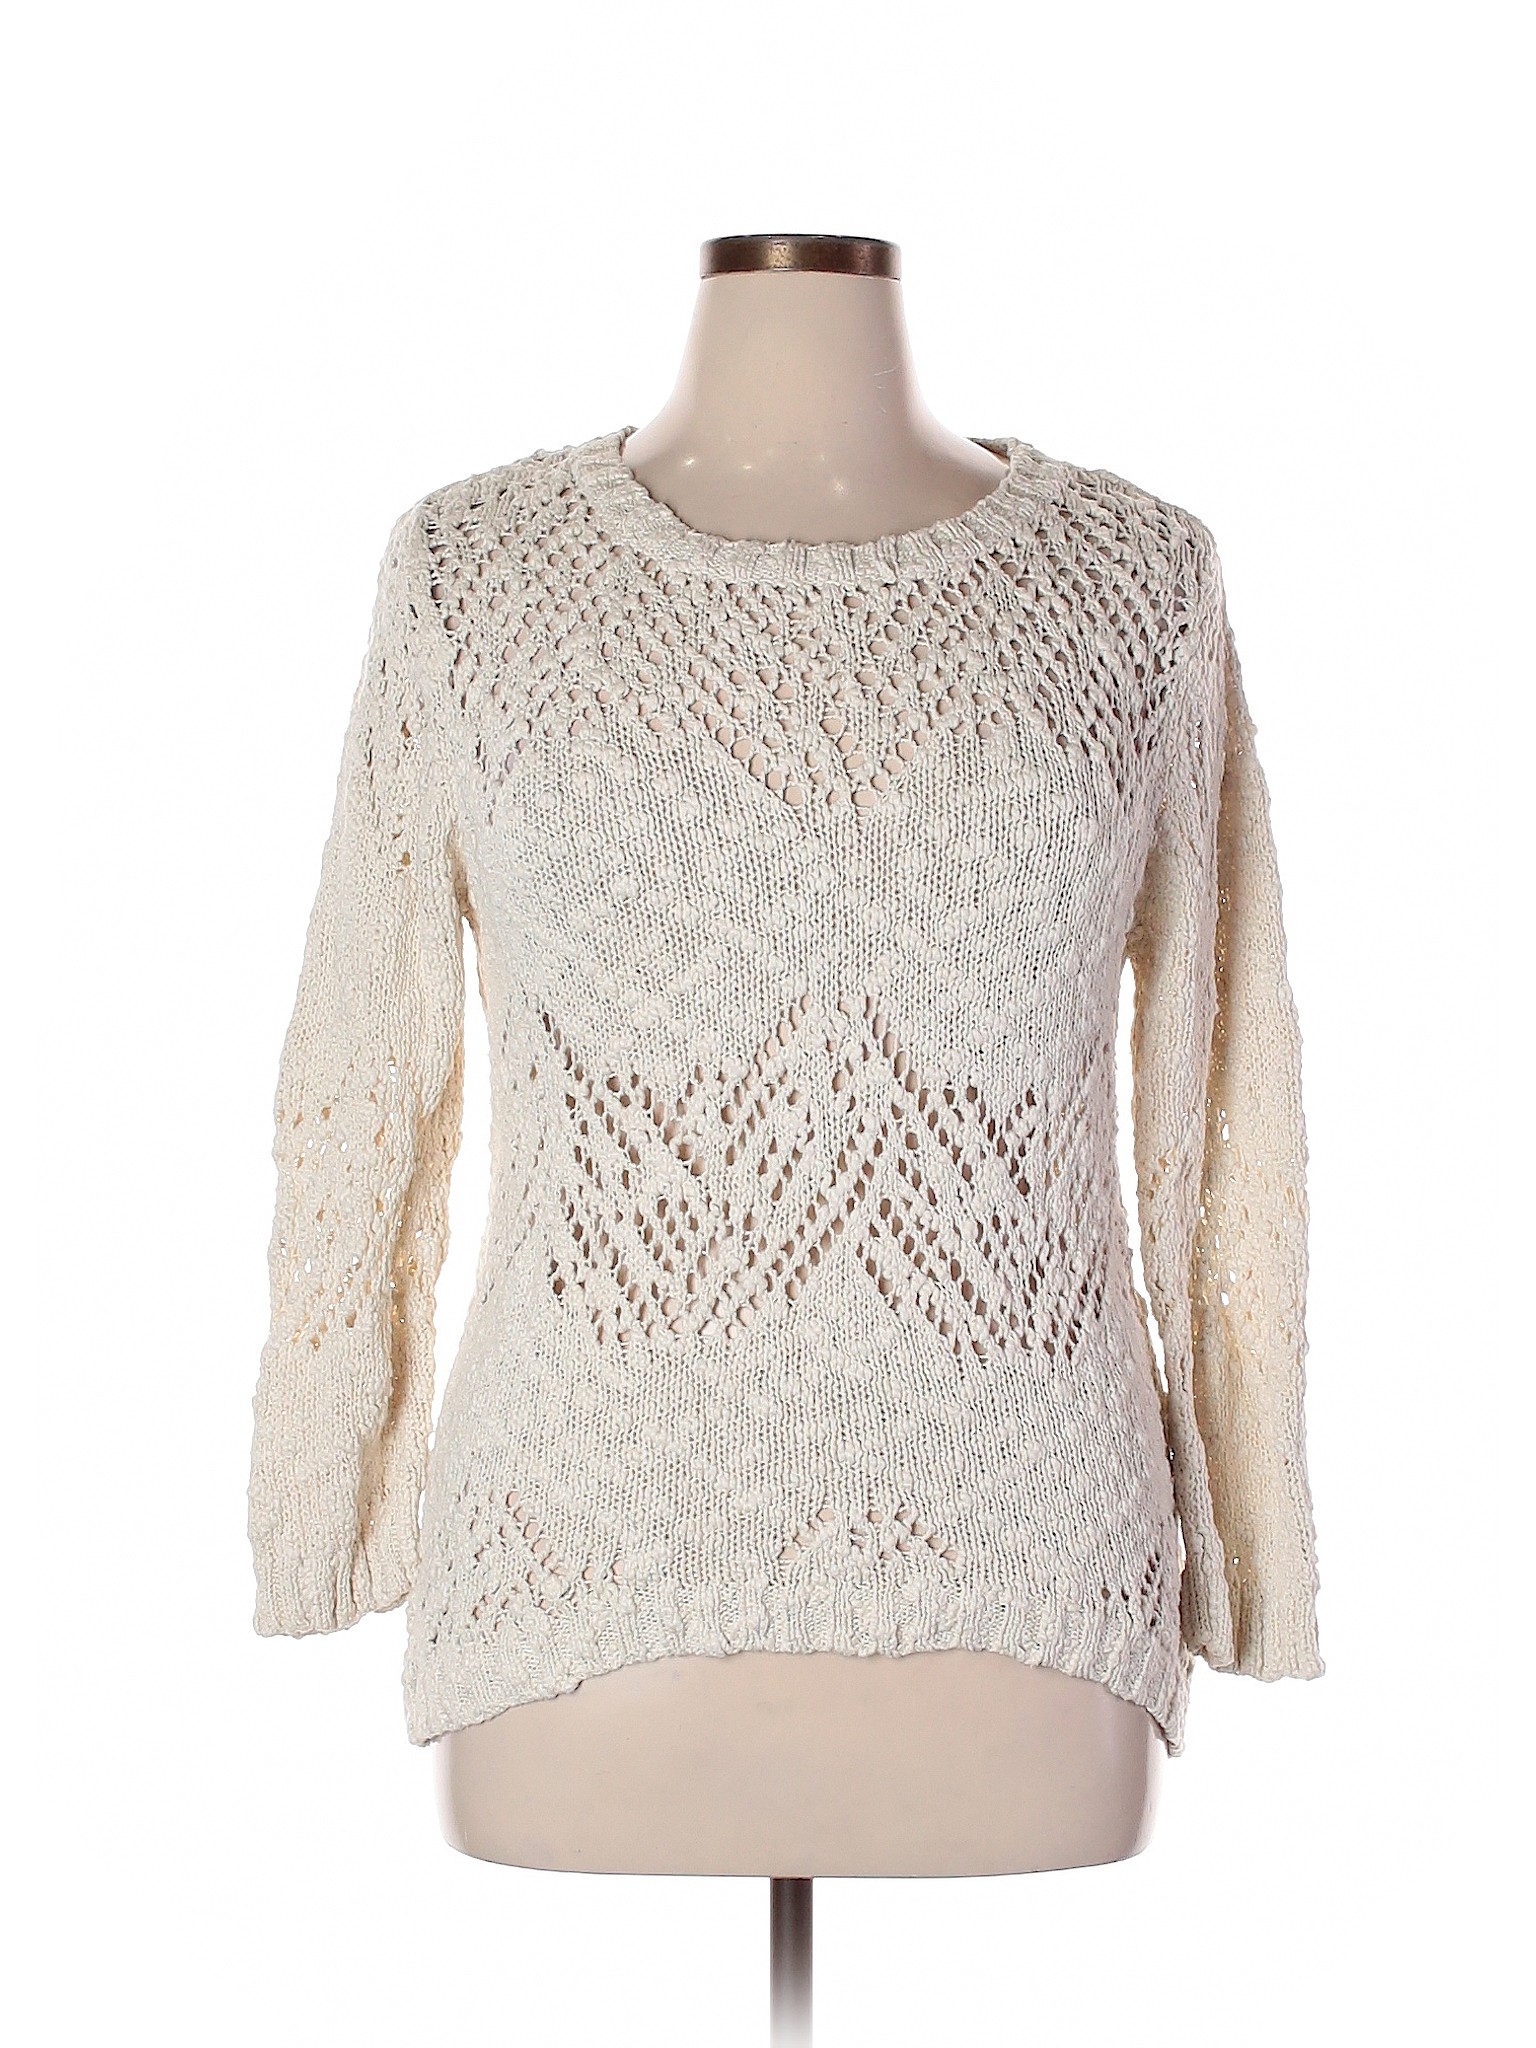 WD.NY Women Ivory Pullover Sweater XL | eBay